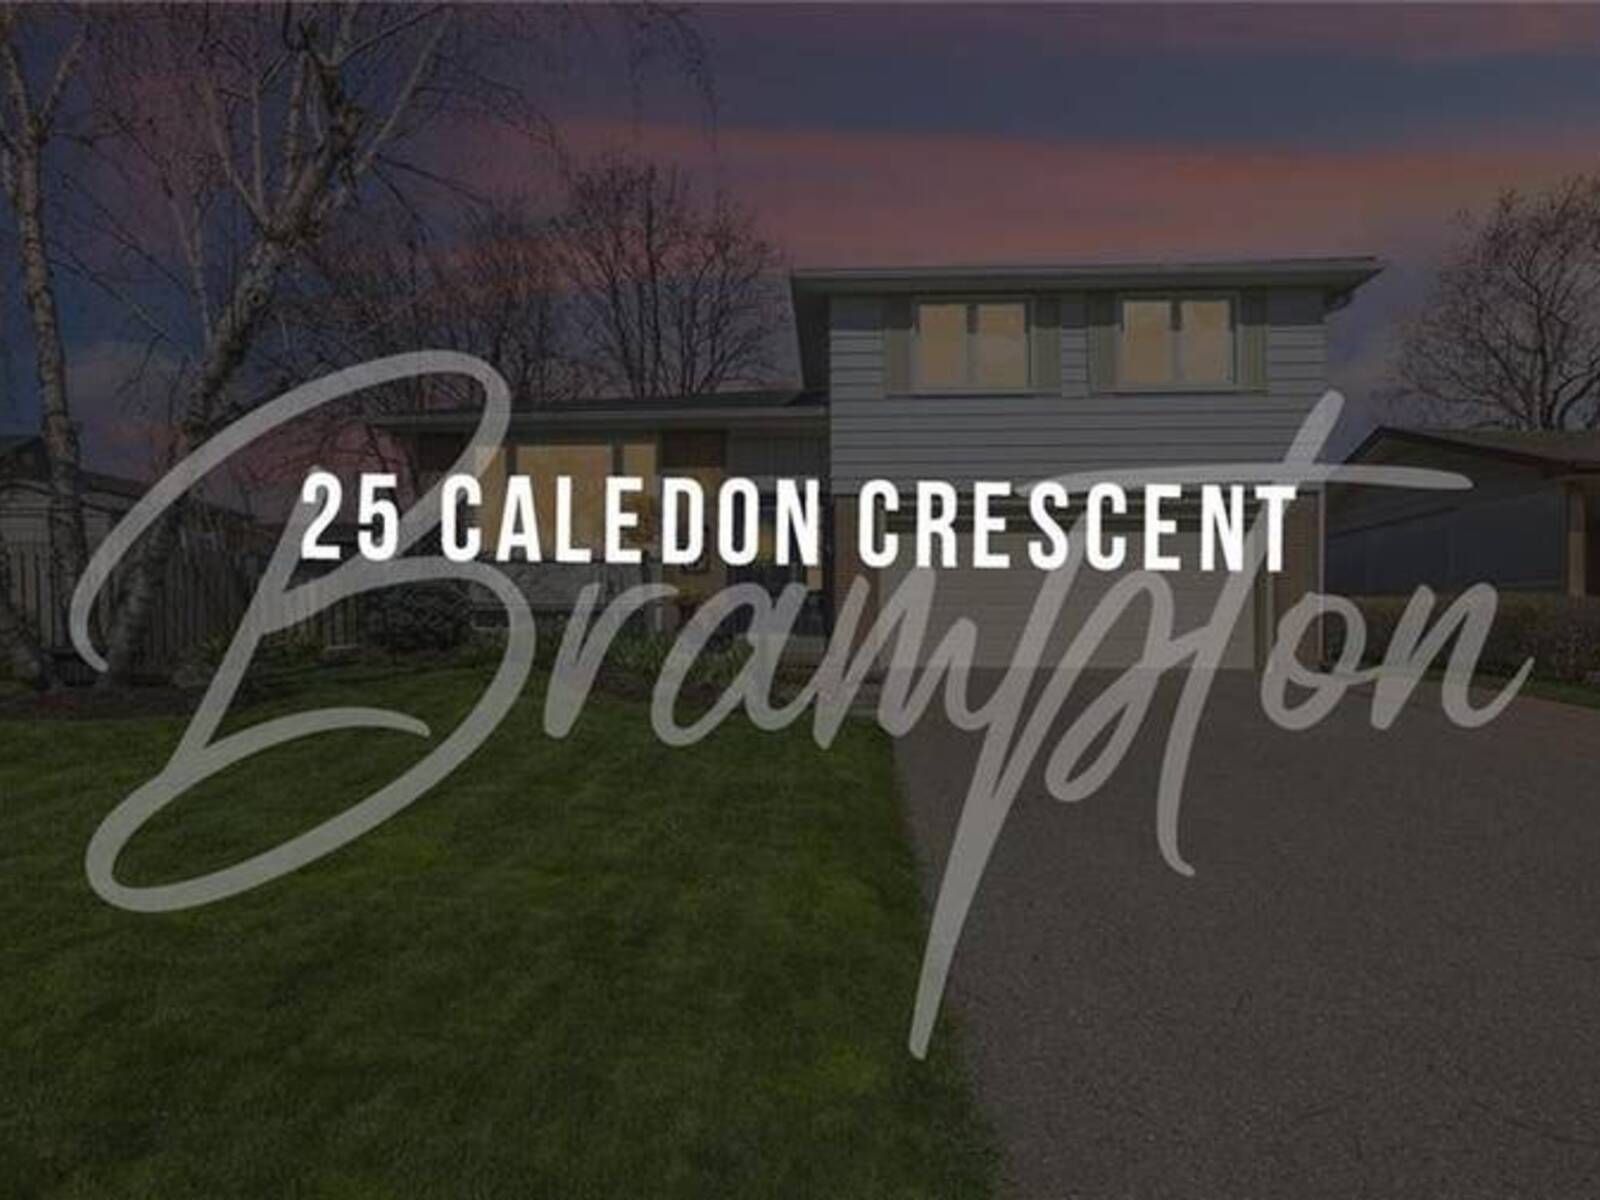 25 CALEDON Crescent, Brampton, Ontario L6W 1C6